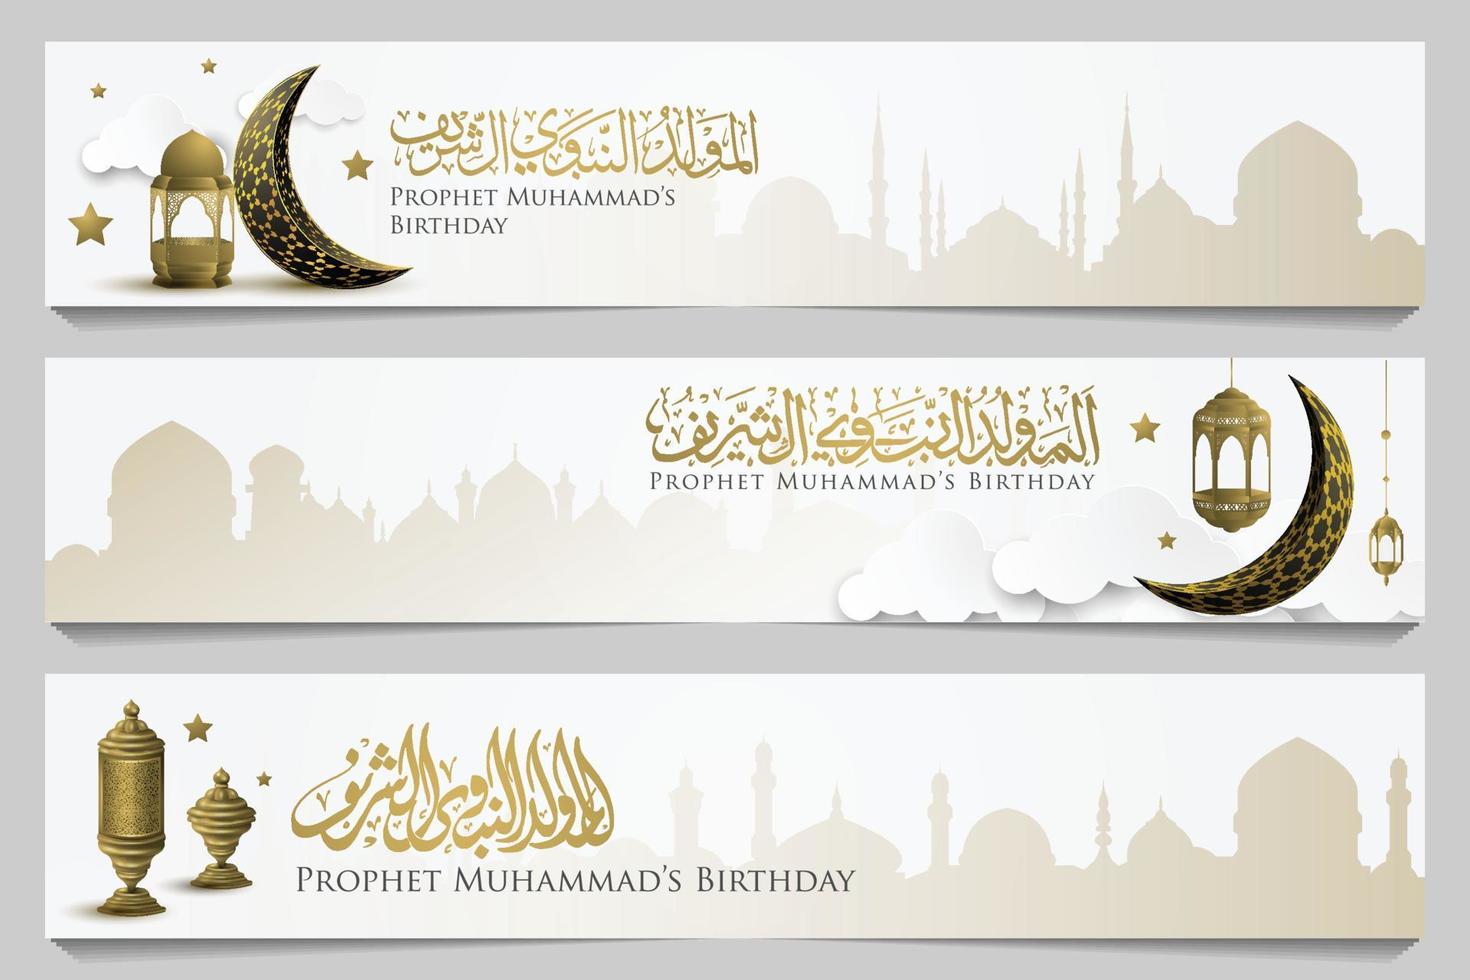 três conjuntos mawlid al-nabi saudação islâmica ilustração fundo vector design com caligrafia árabe e mesquita para cartão, banner, papel de parede, capa. a média é o aniversário do profeta muhammad